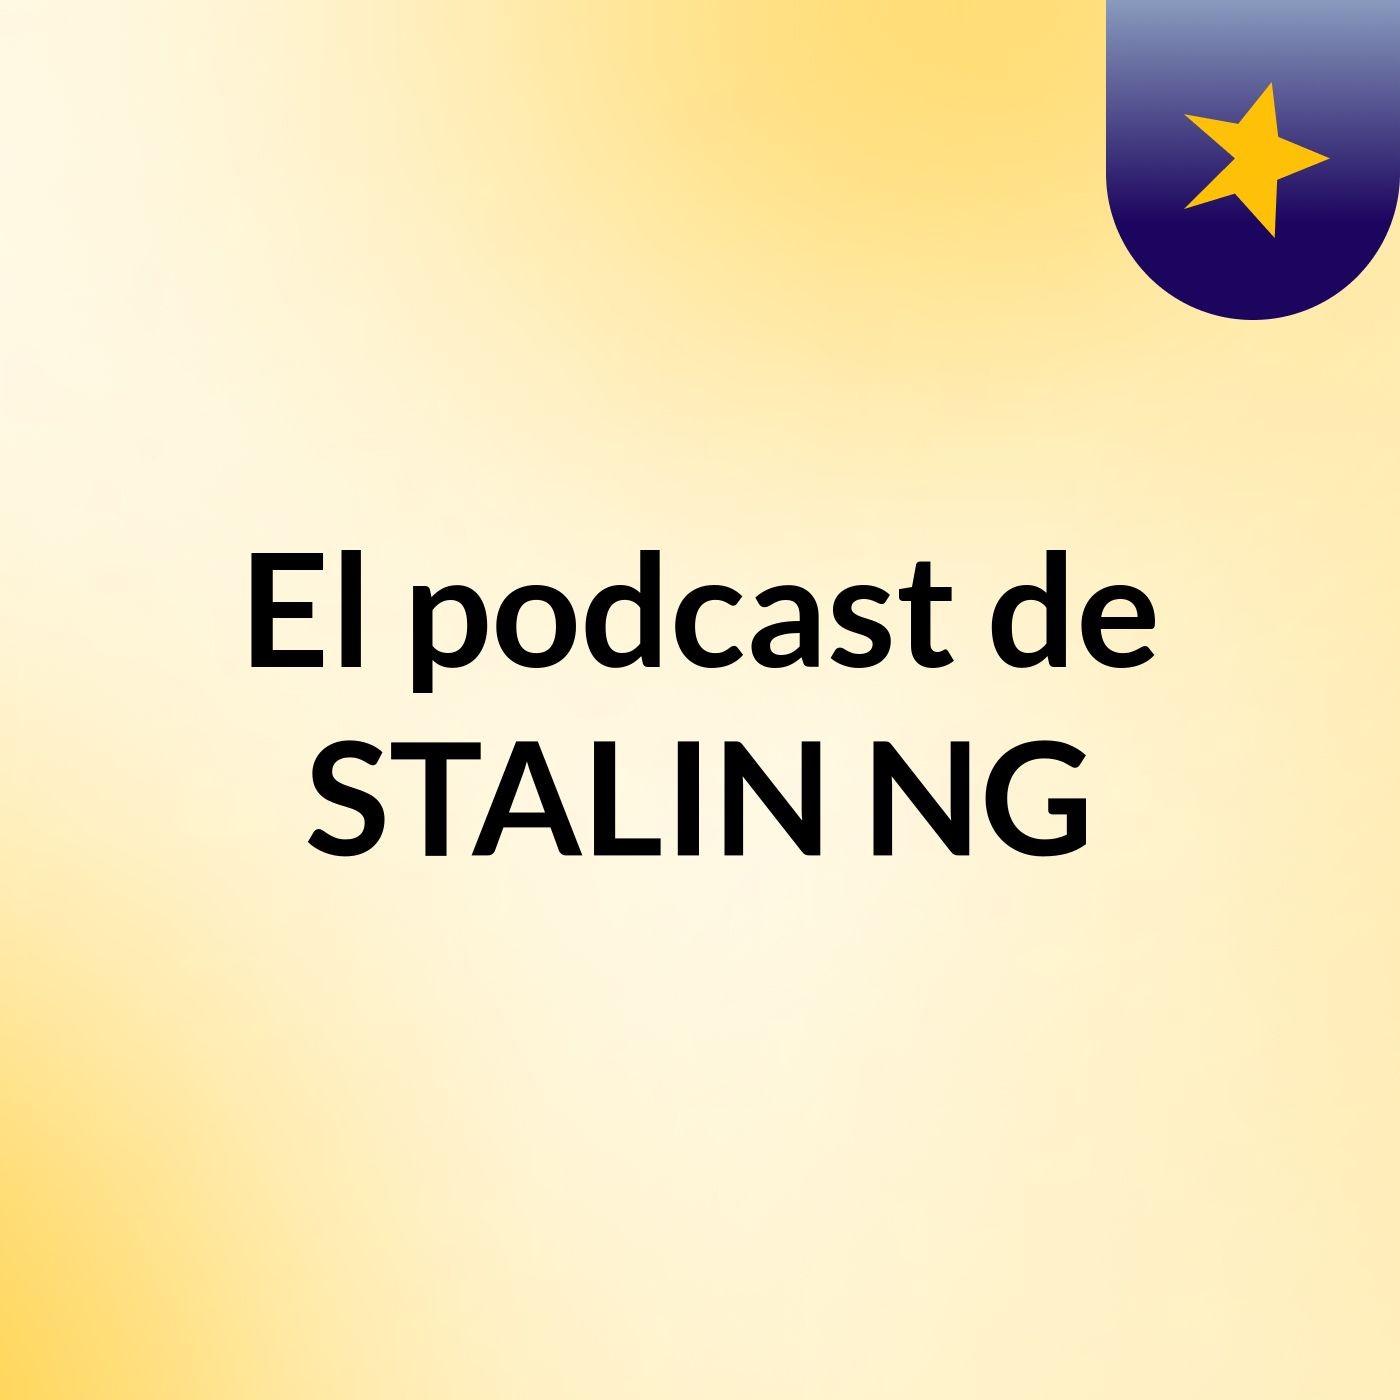 El podcast de STALIN NG